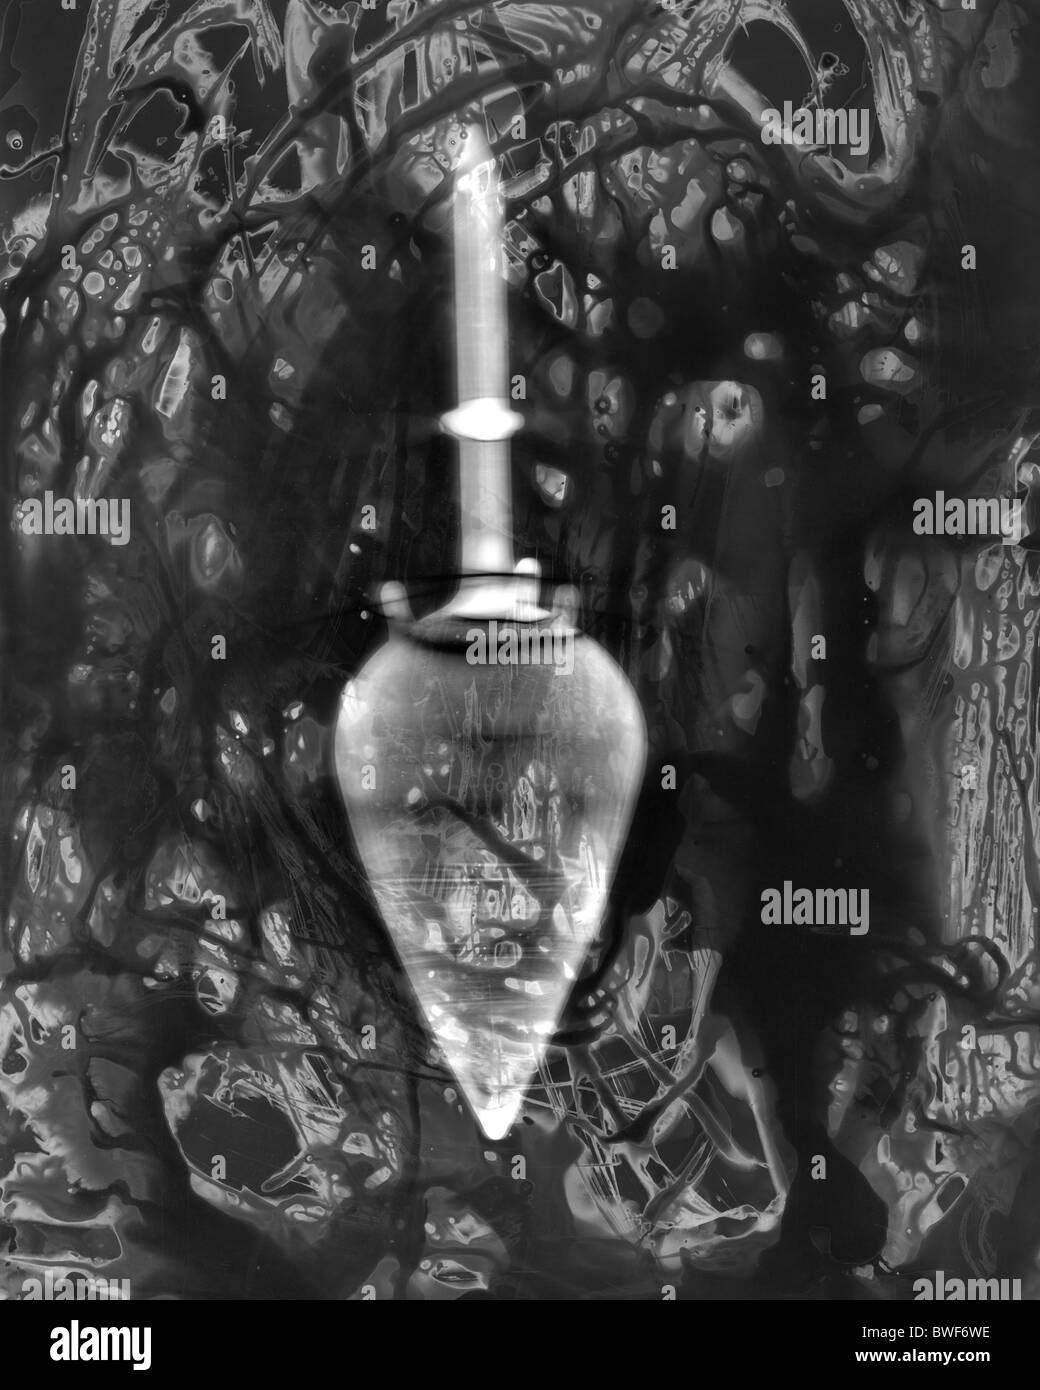 La pratique traditionnelle de la chambre noire photographique et photogramme production avec le traitement chimique du papier photographique ShadowCatchers Banque D'Images